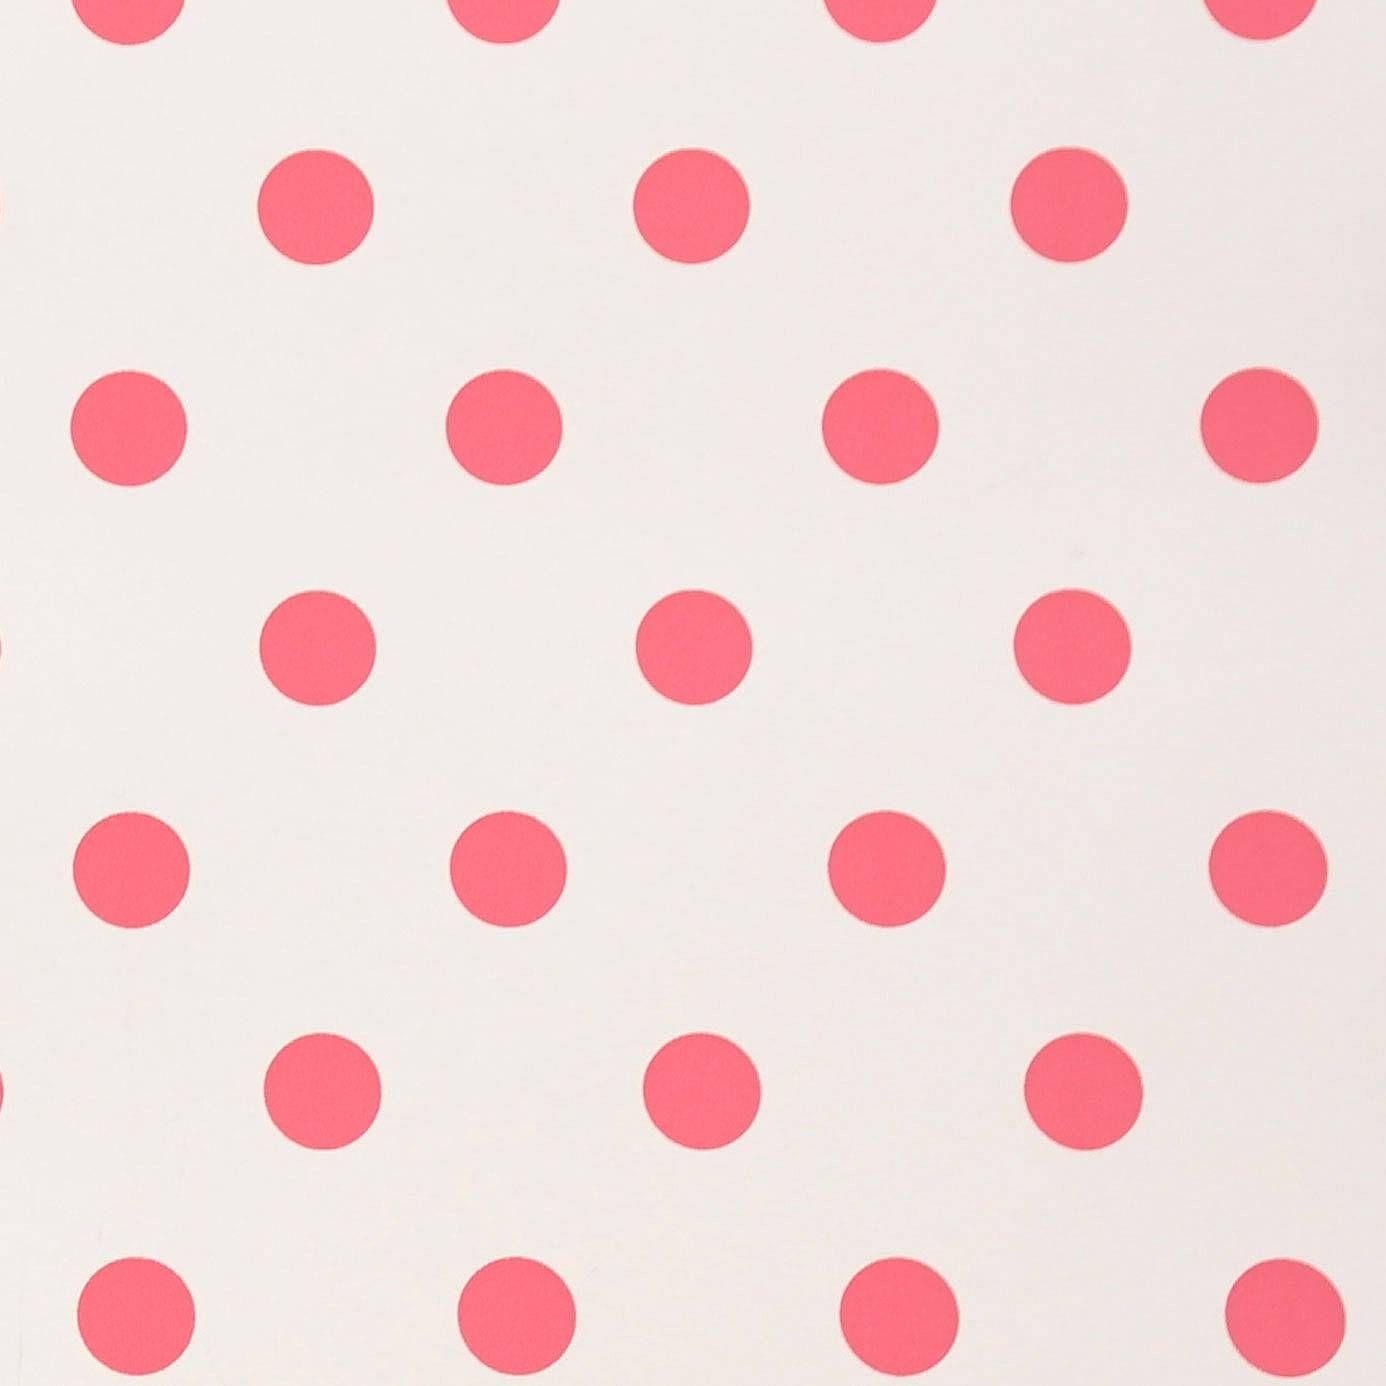 Polka Dot Wallpaper 3002 1386x1386 px